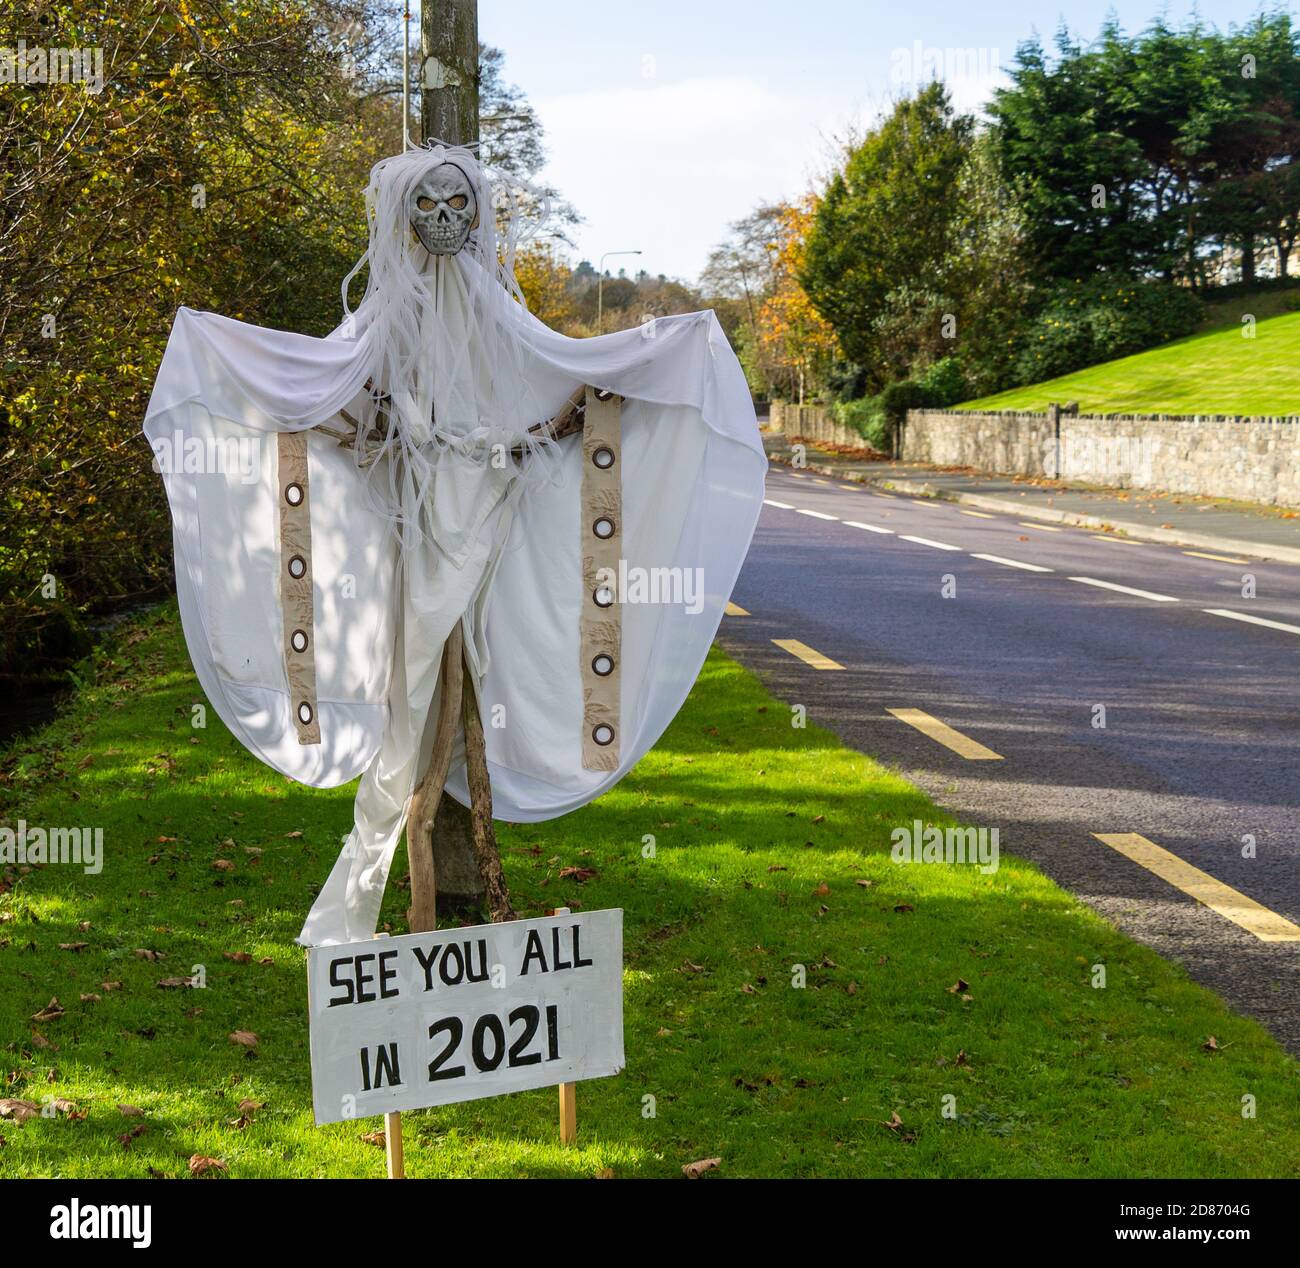 Figura del fantasma de Halloween con despedida hasta el signo de 2021 Foto de stock